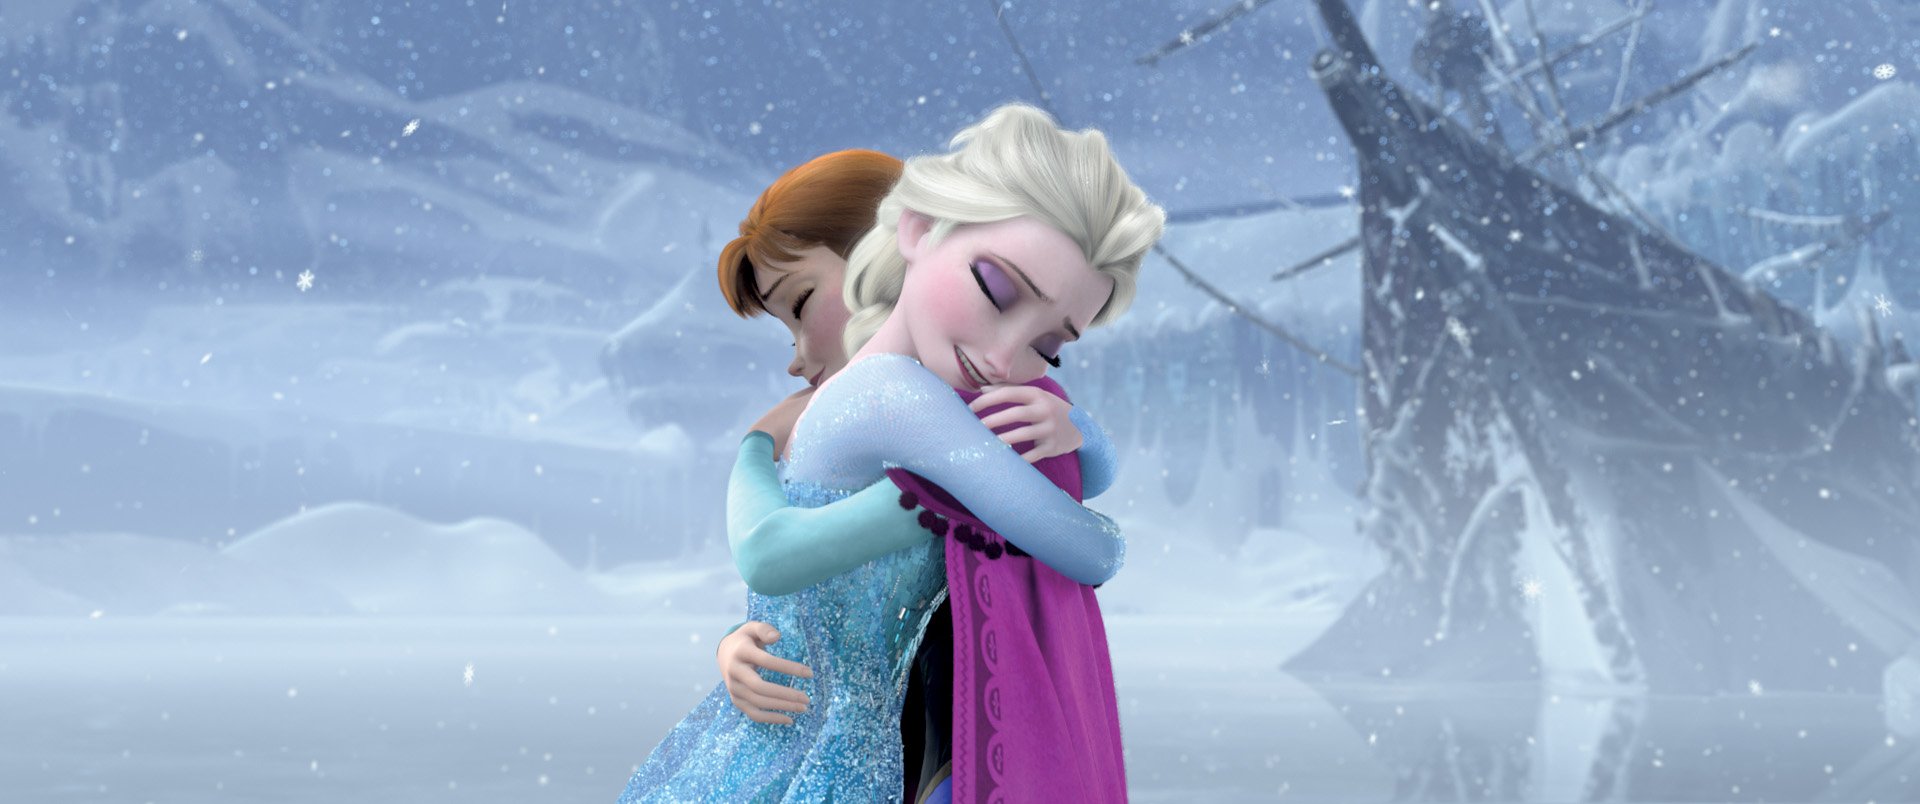 ディズニー スタジオ アニメーション 公式 無事に 真実の愛 を見つけて アレンデールの城の門も エルサの心も開かれました Oo アナと雪の女王 をご覧いただいたみなさま 最後までお付き合いいただきありがとうございました アナ や